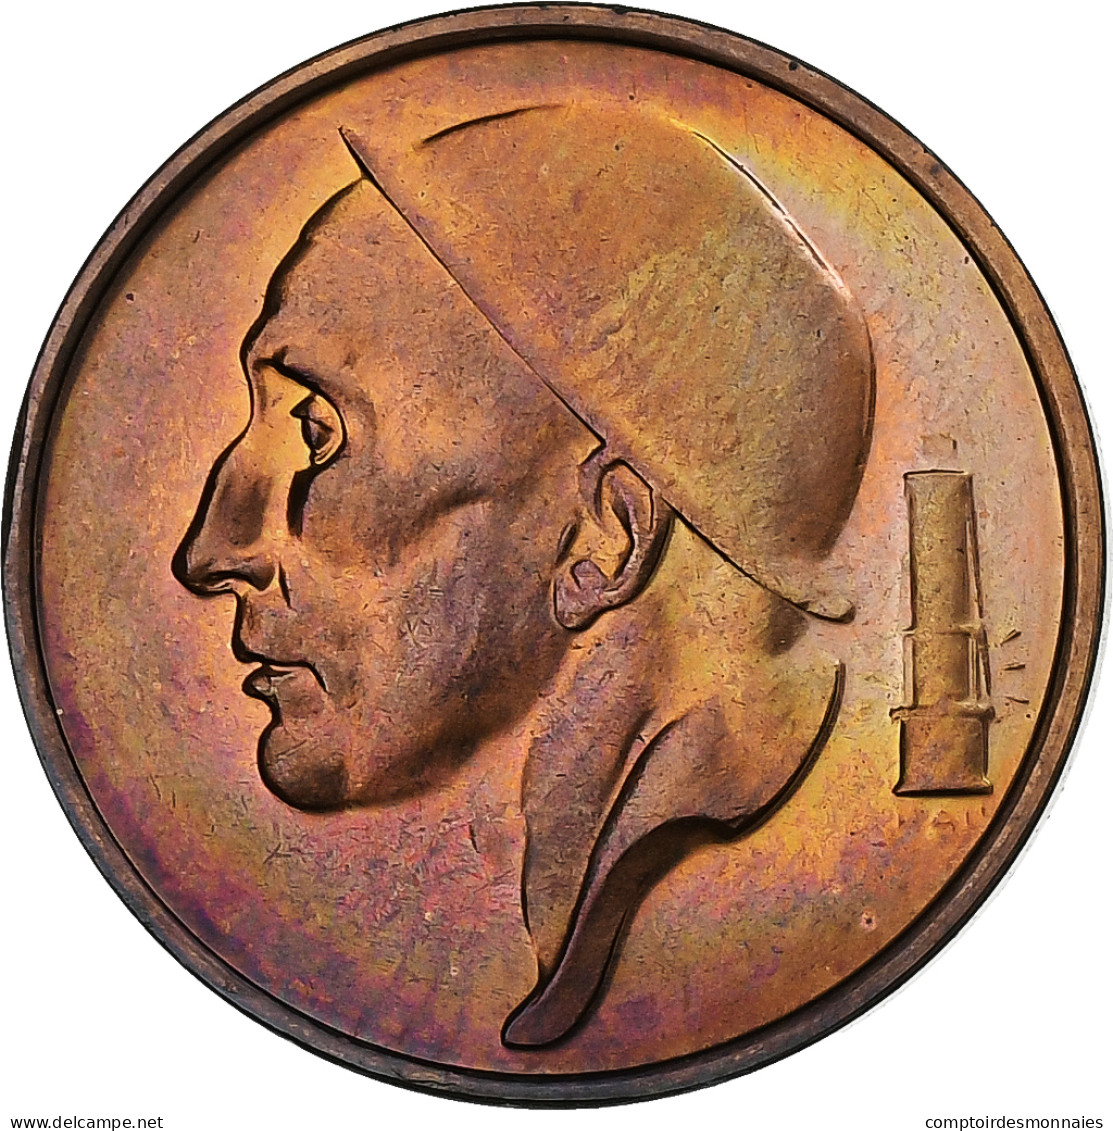 Belgique, Baudouin I, 50 Centimes, 2001, Bronze, SPL, KM:148.1 - 50 Cent